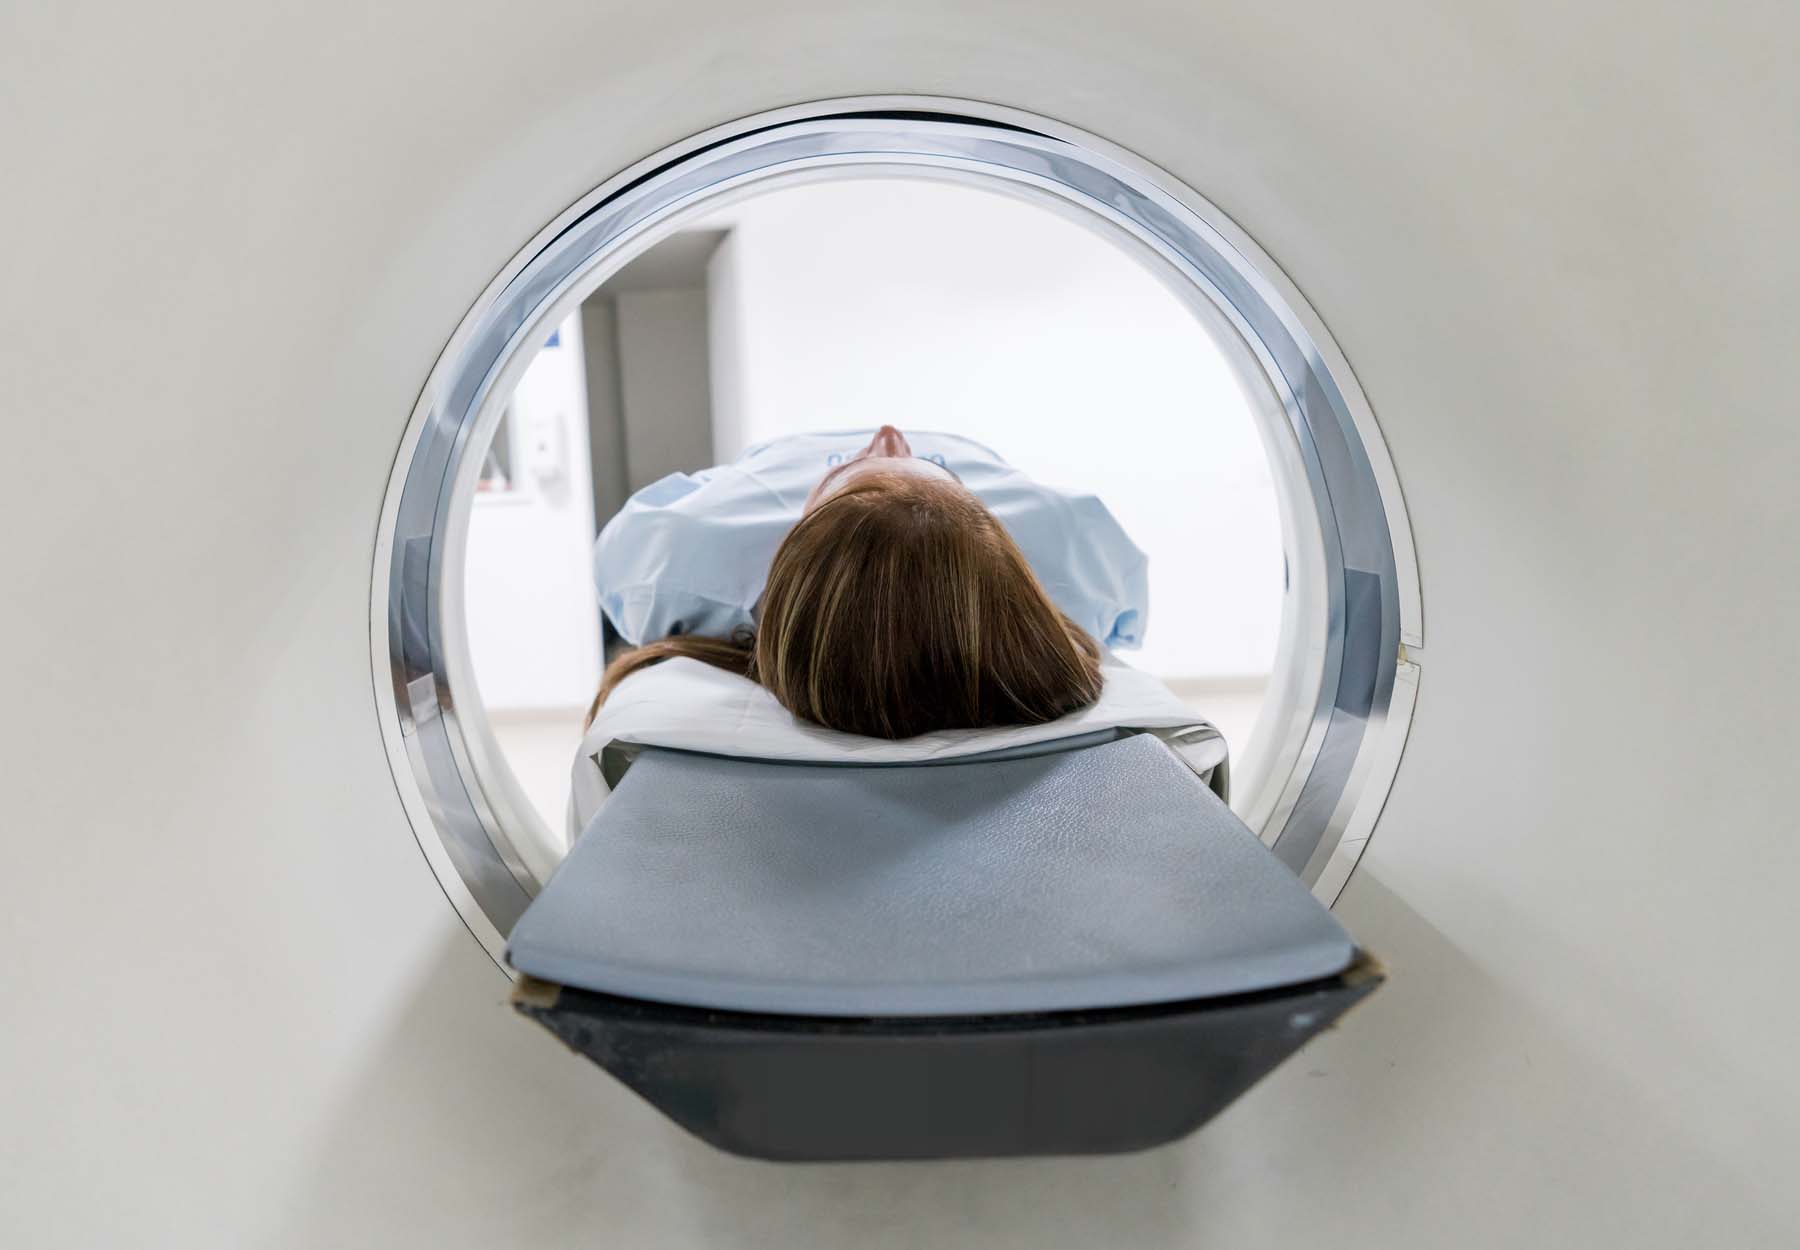 A woman in an MRI machine.